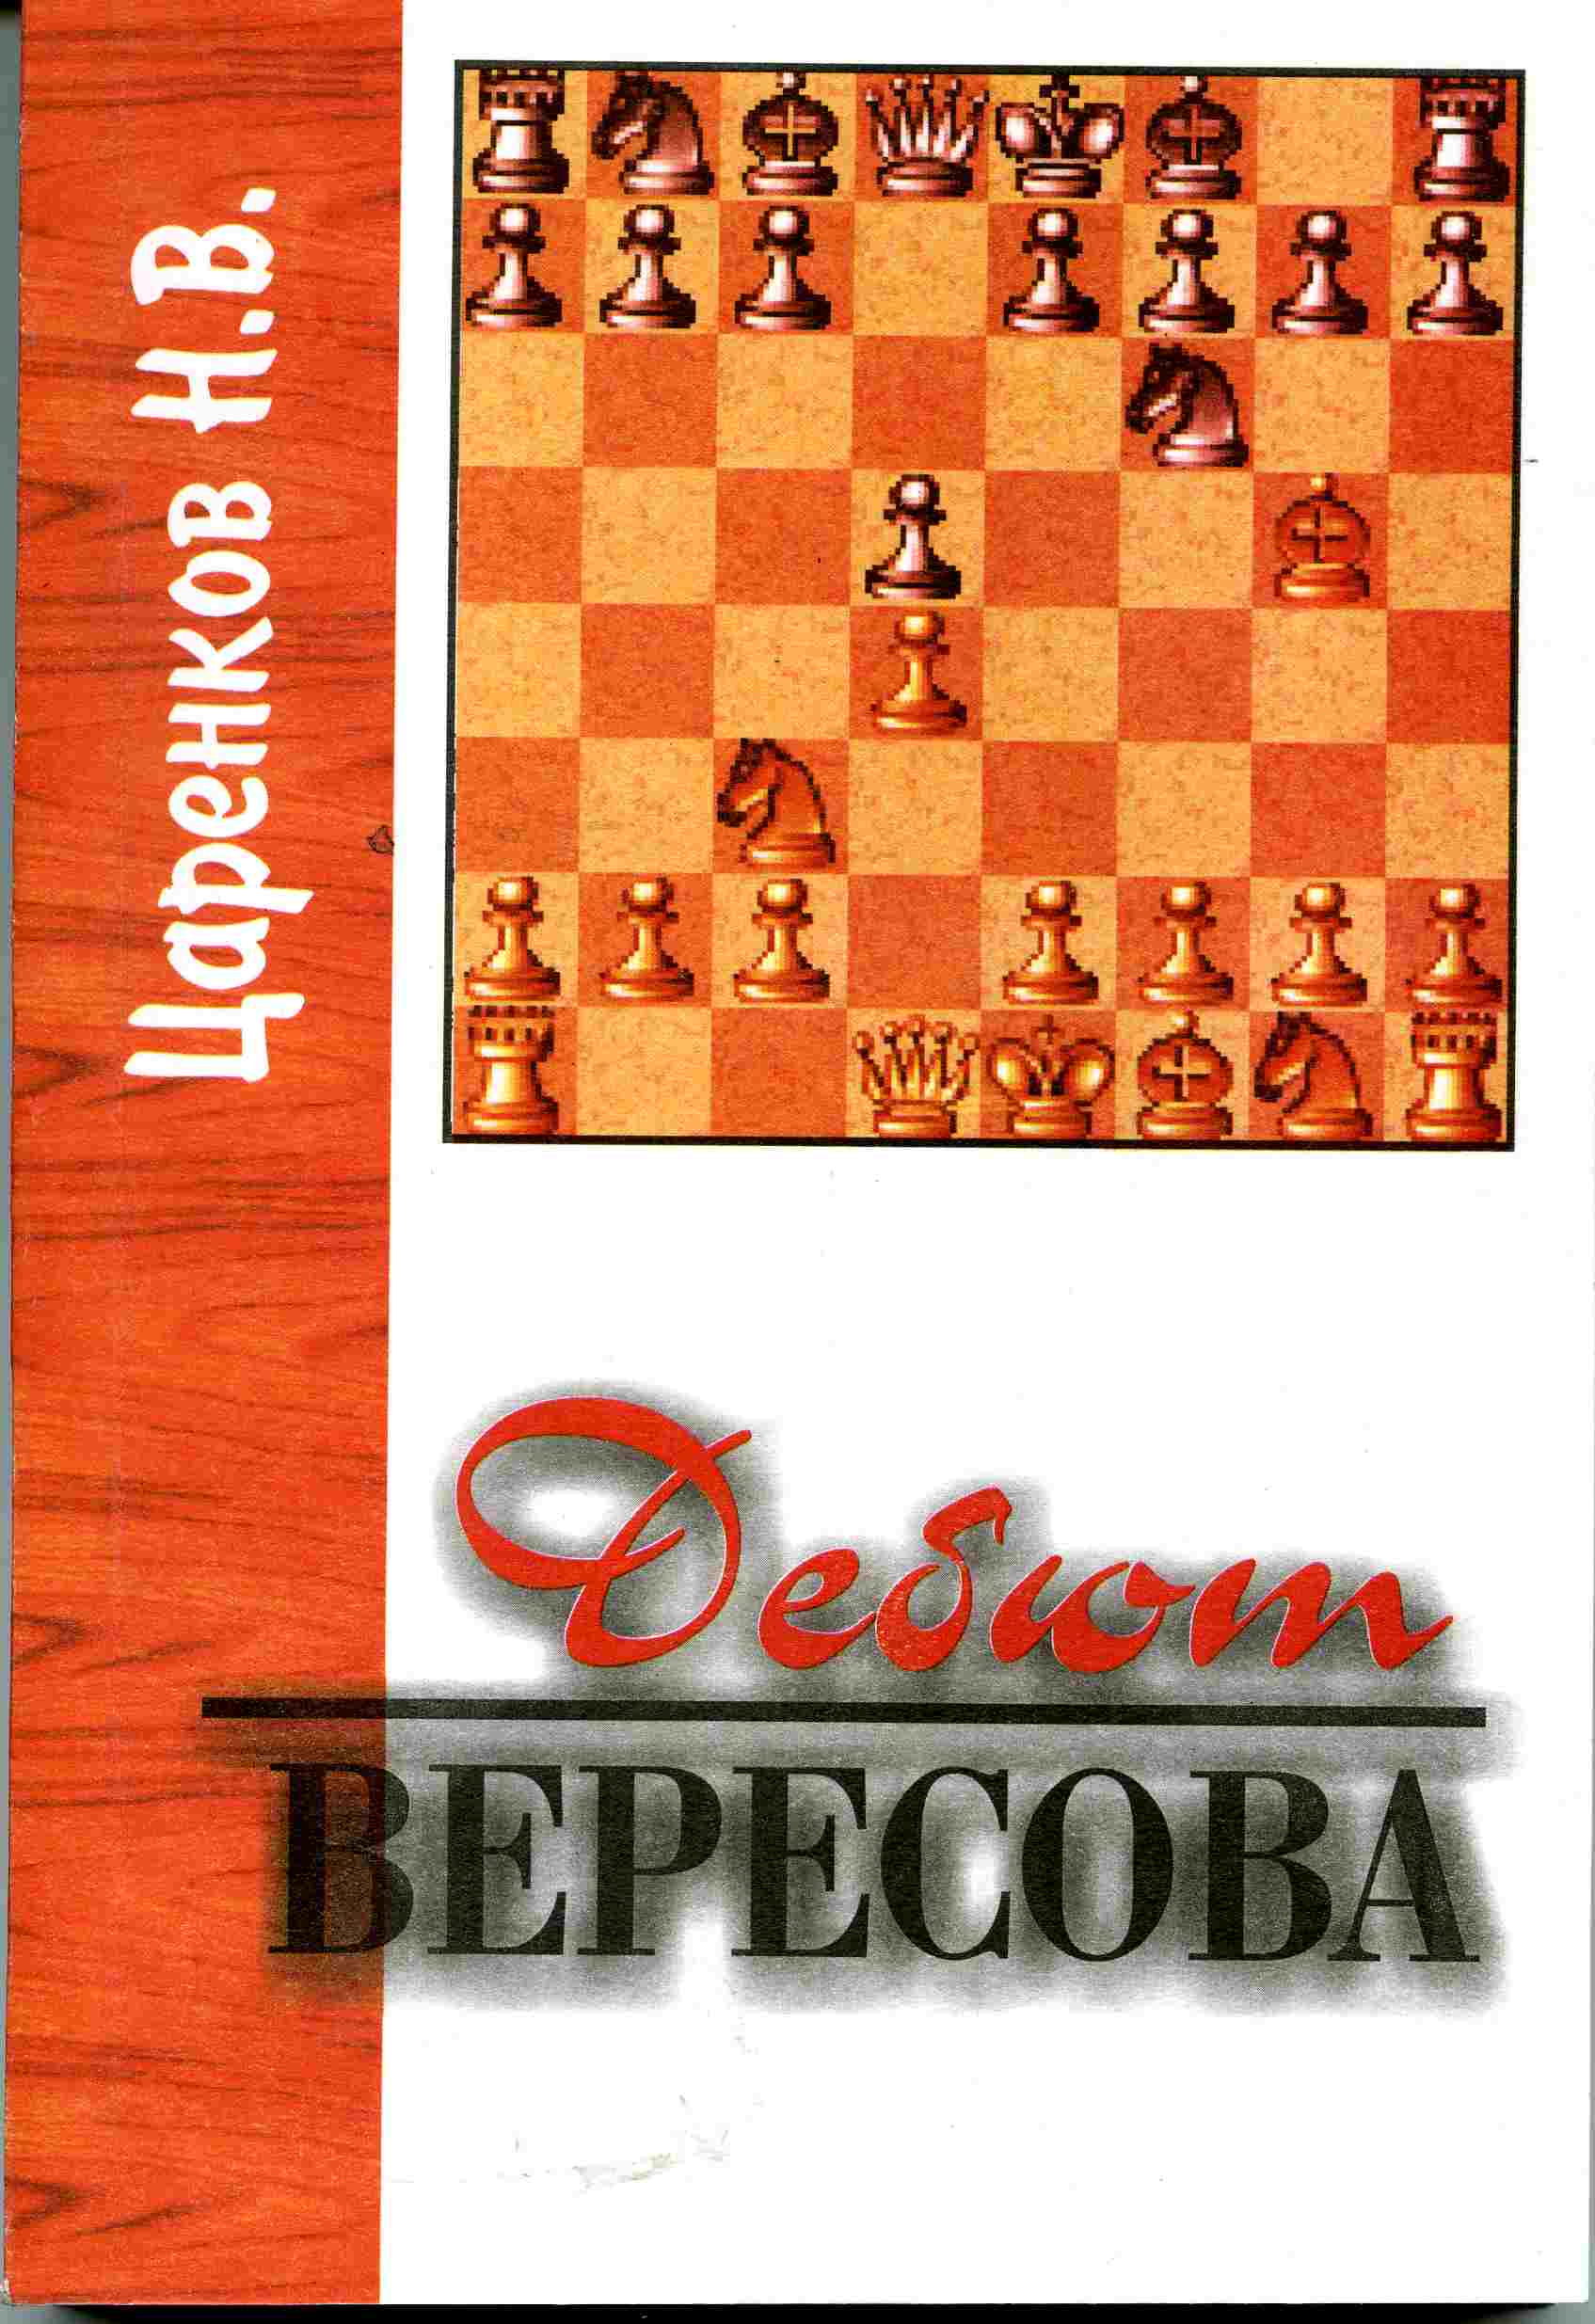 Дебют Вересова (1.d4., 2.Кс3…)